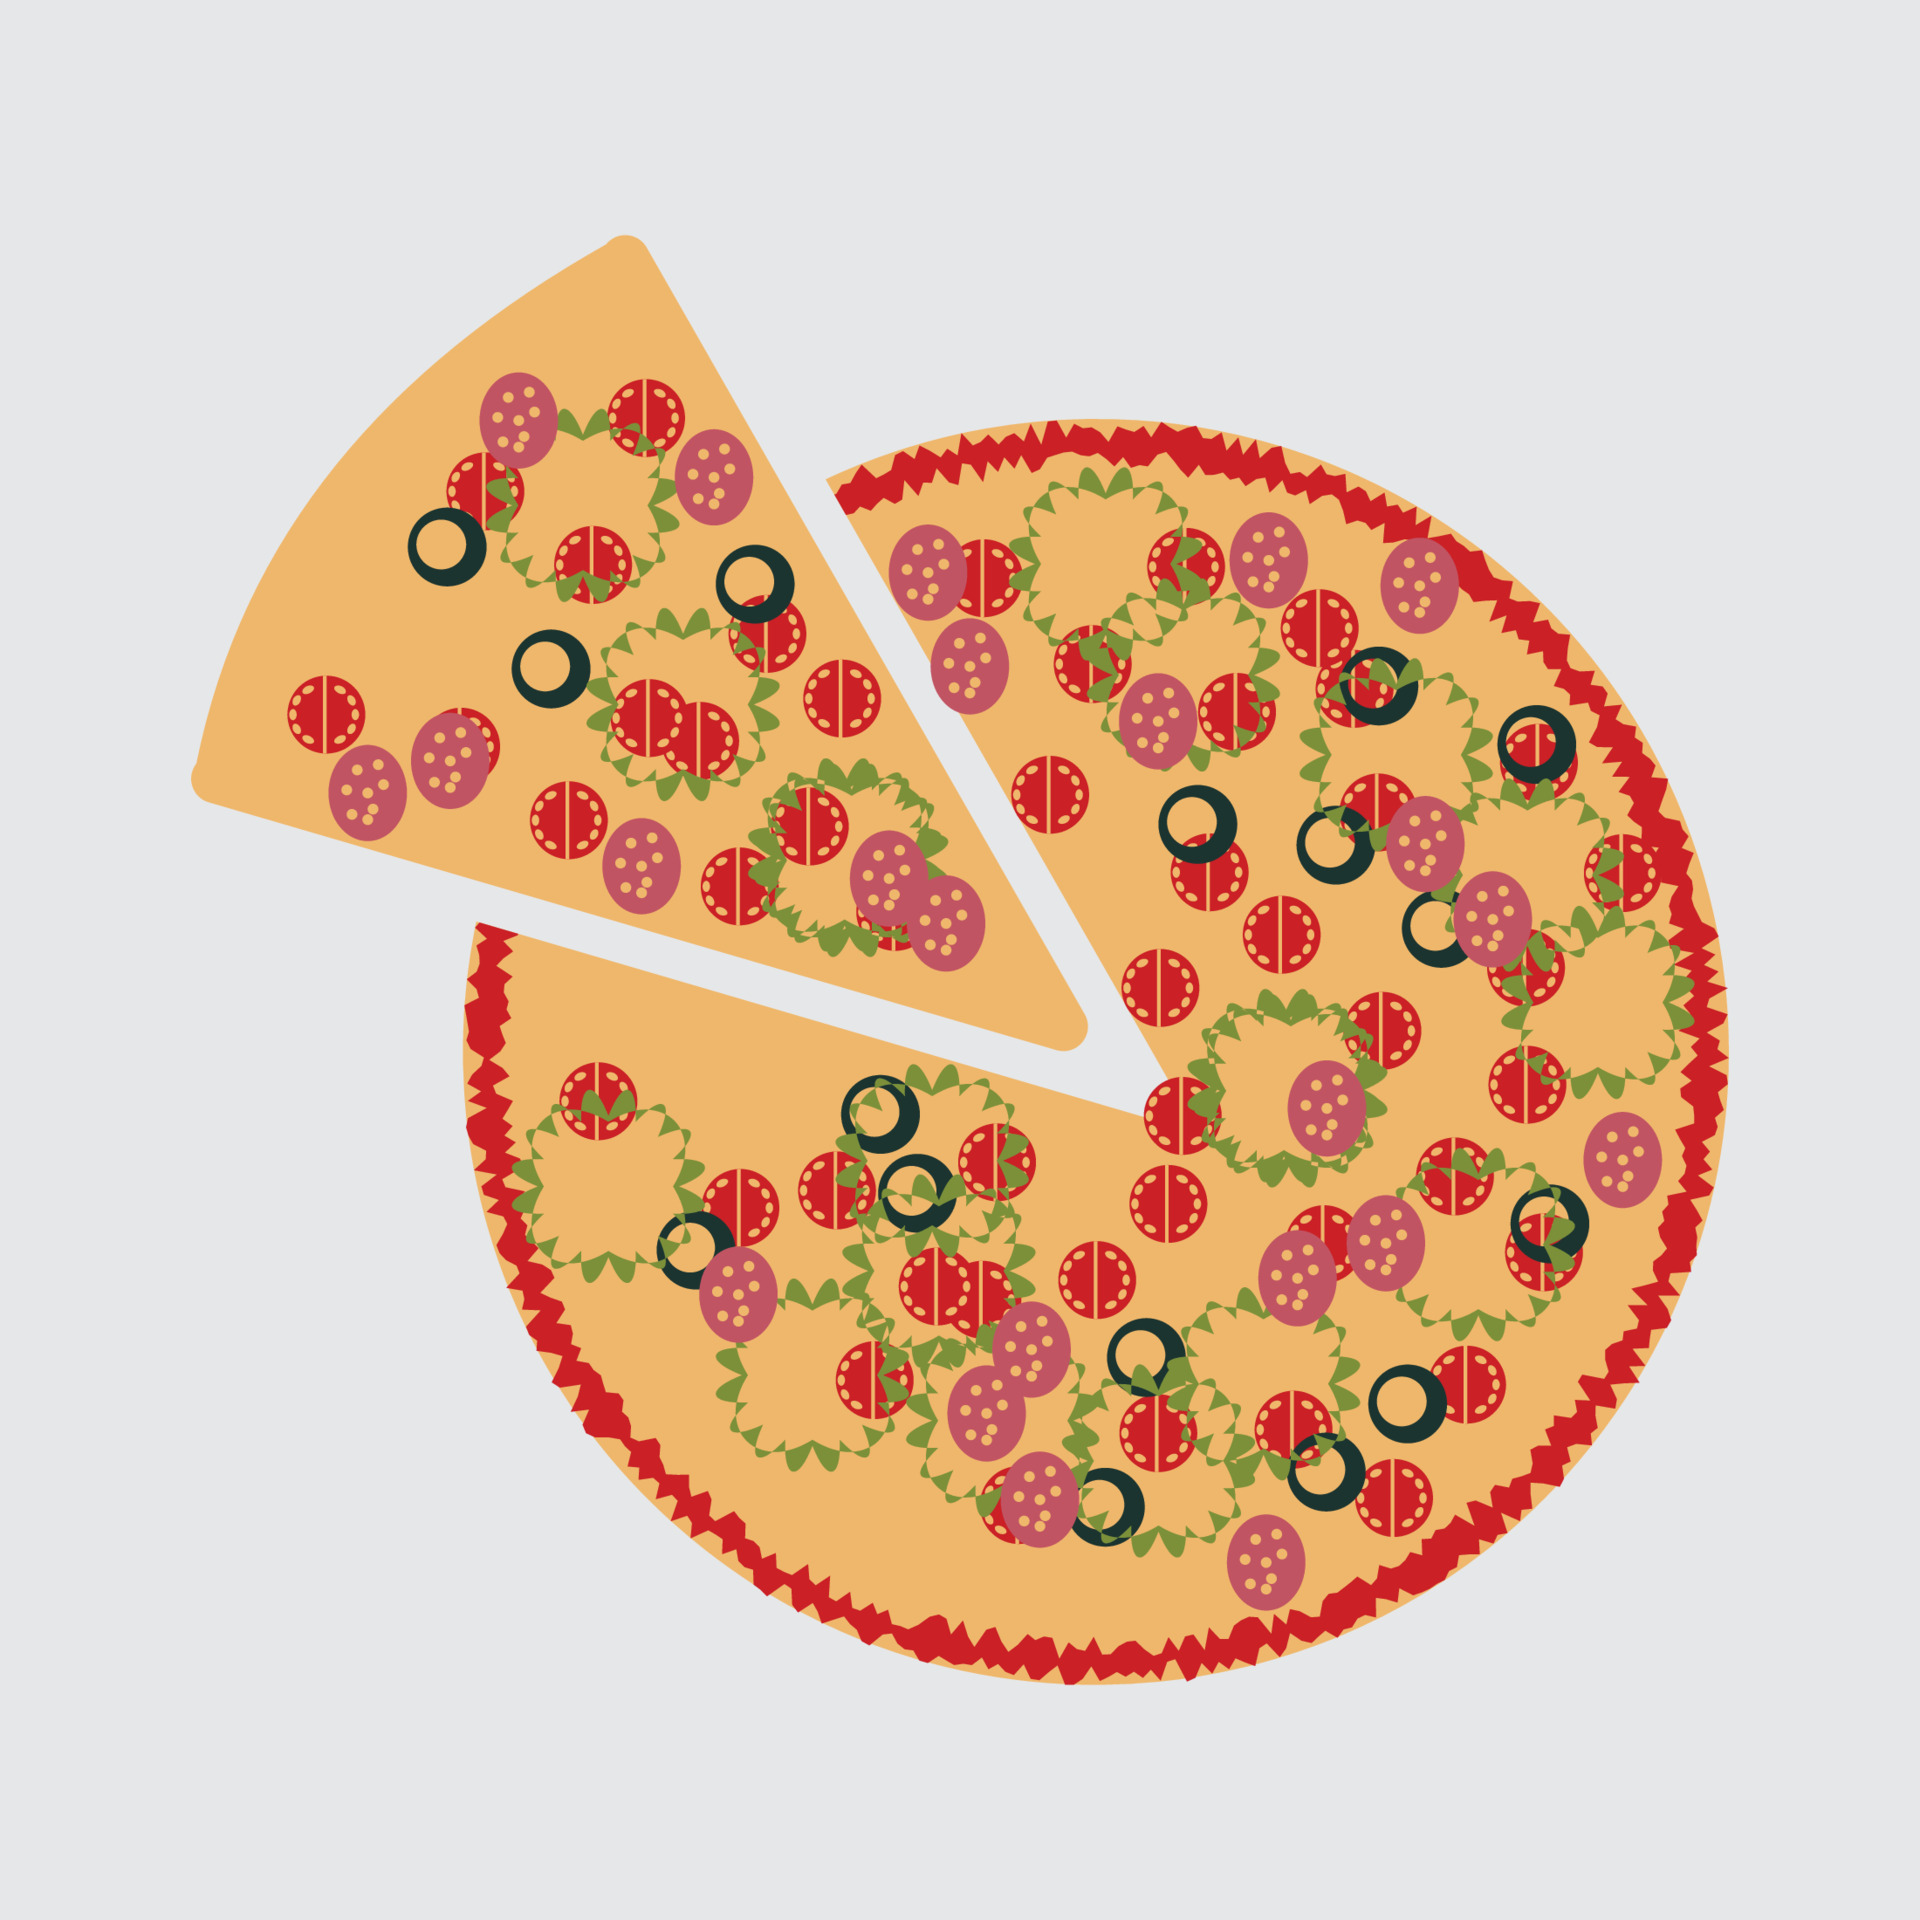 Пицца шаблон. Аппликация пицца шаблон. Кусок пиццы для аппликации. Шаблон пиццерии. 2 кусочка пиццы виноградный